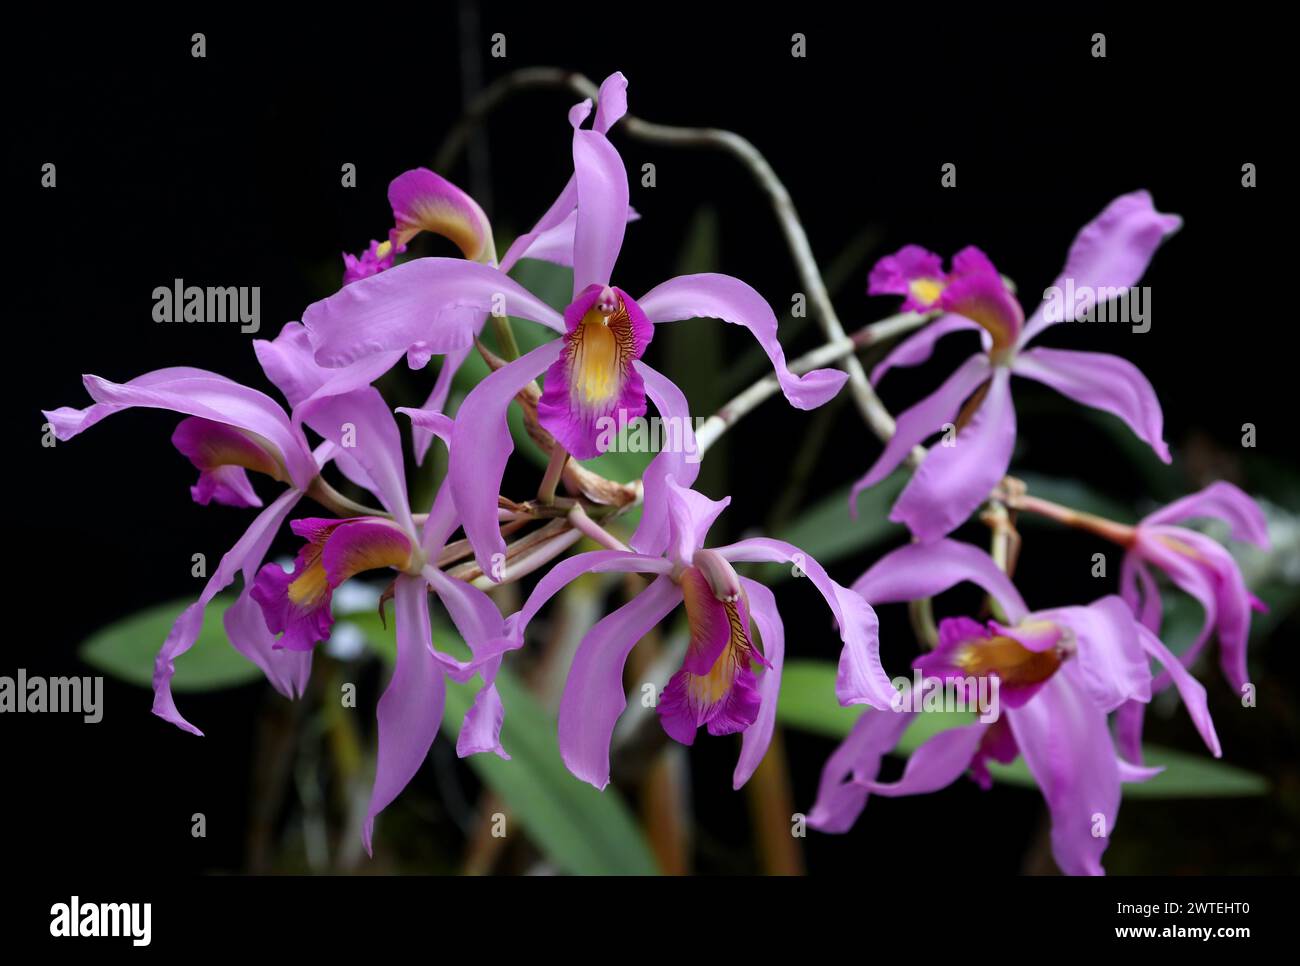 Laelia superbiens, Orchidaceae. Laelia superbiens est une espèce d'orchidée originaire du Mexique, du Guatemala et du Honduras. Banque D'Images